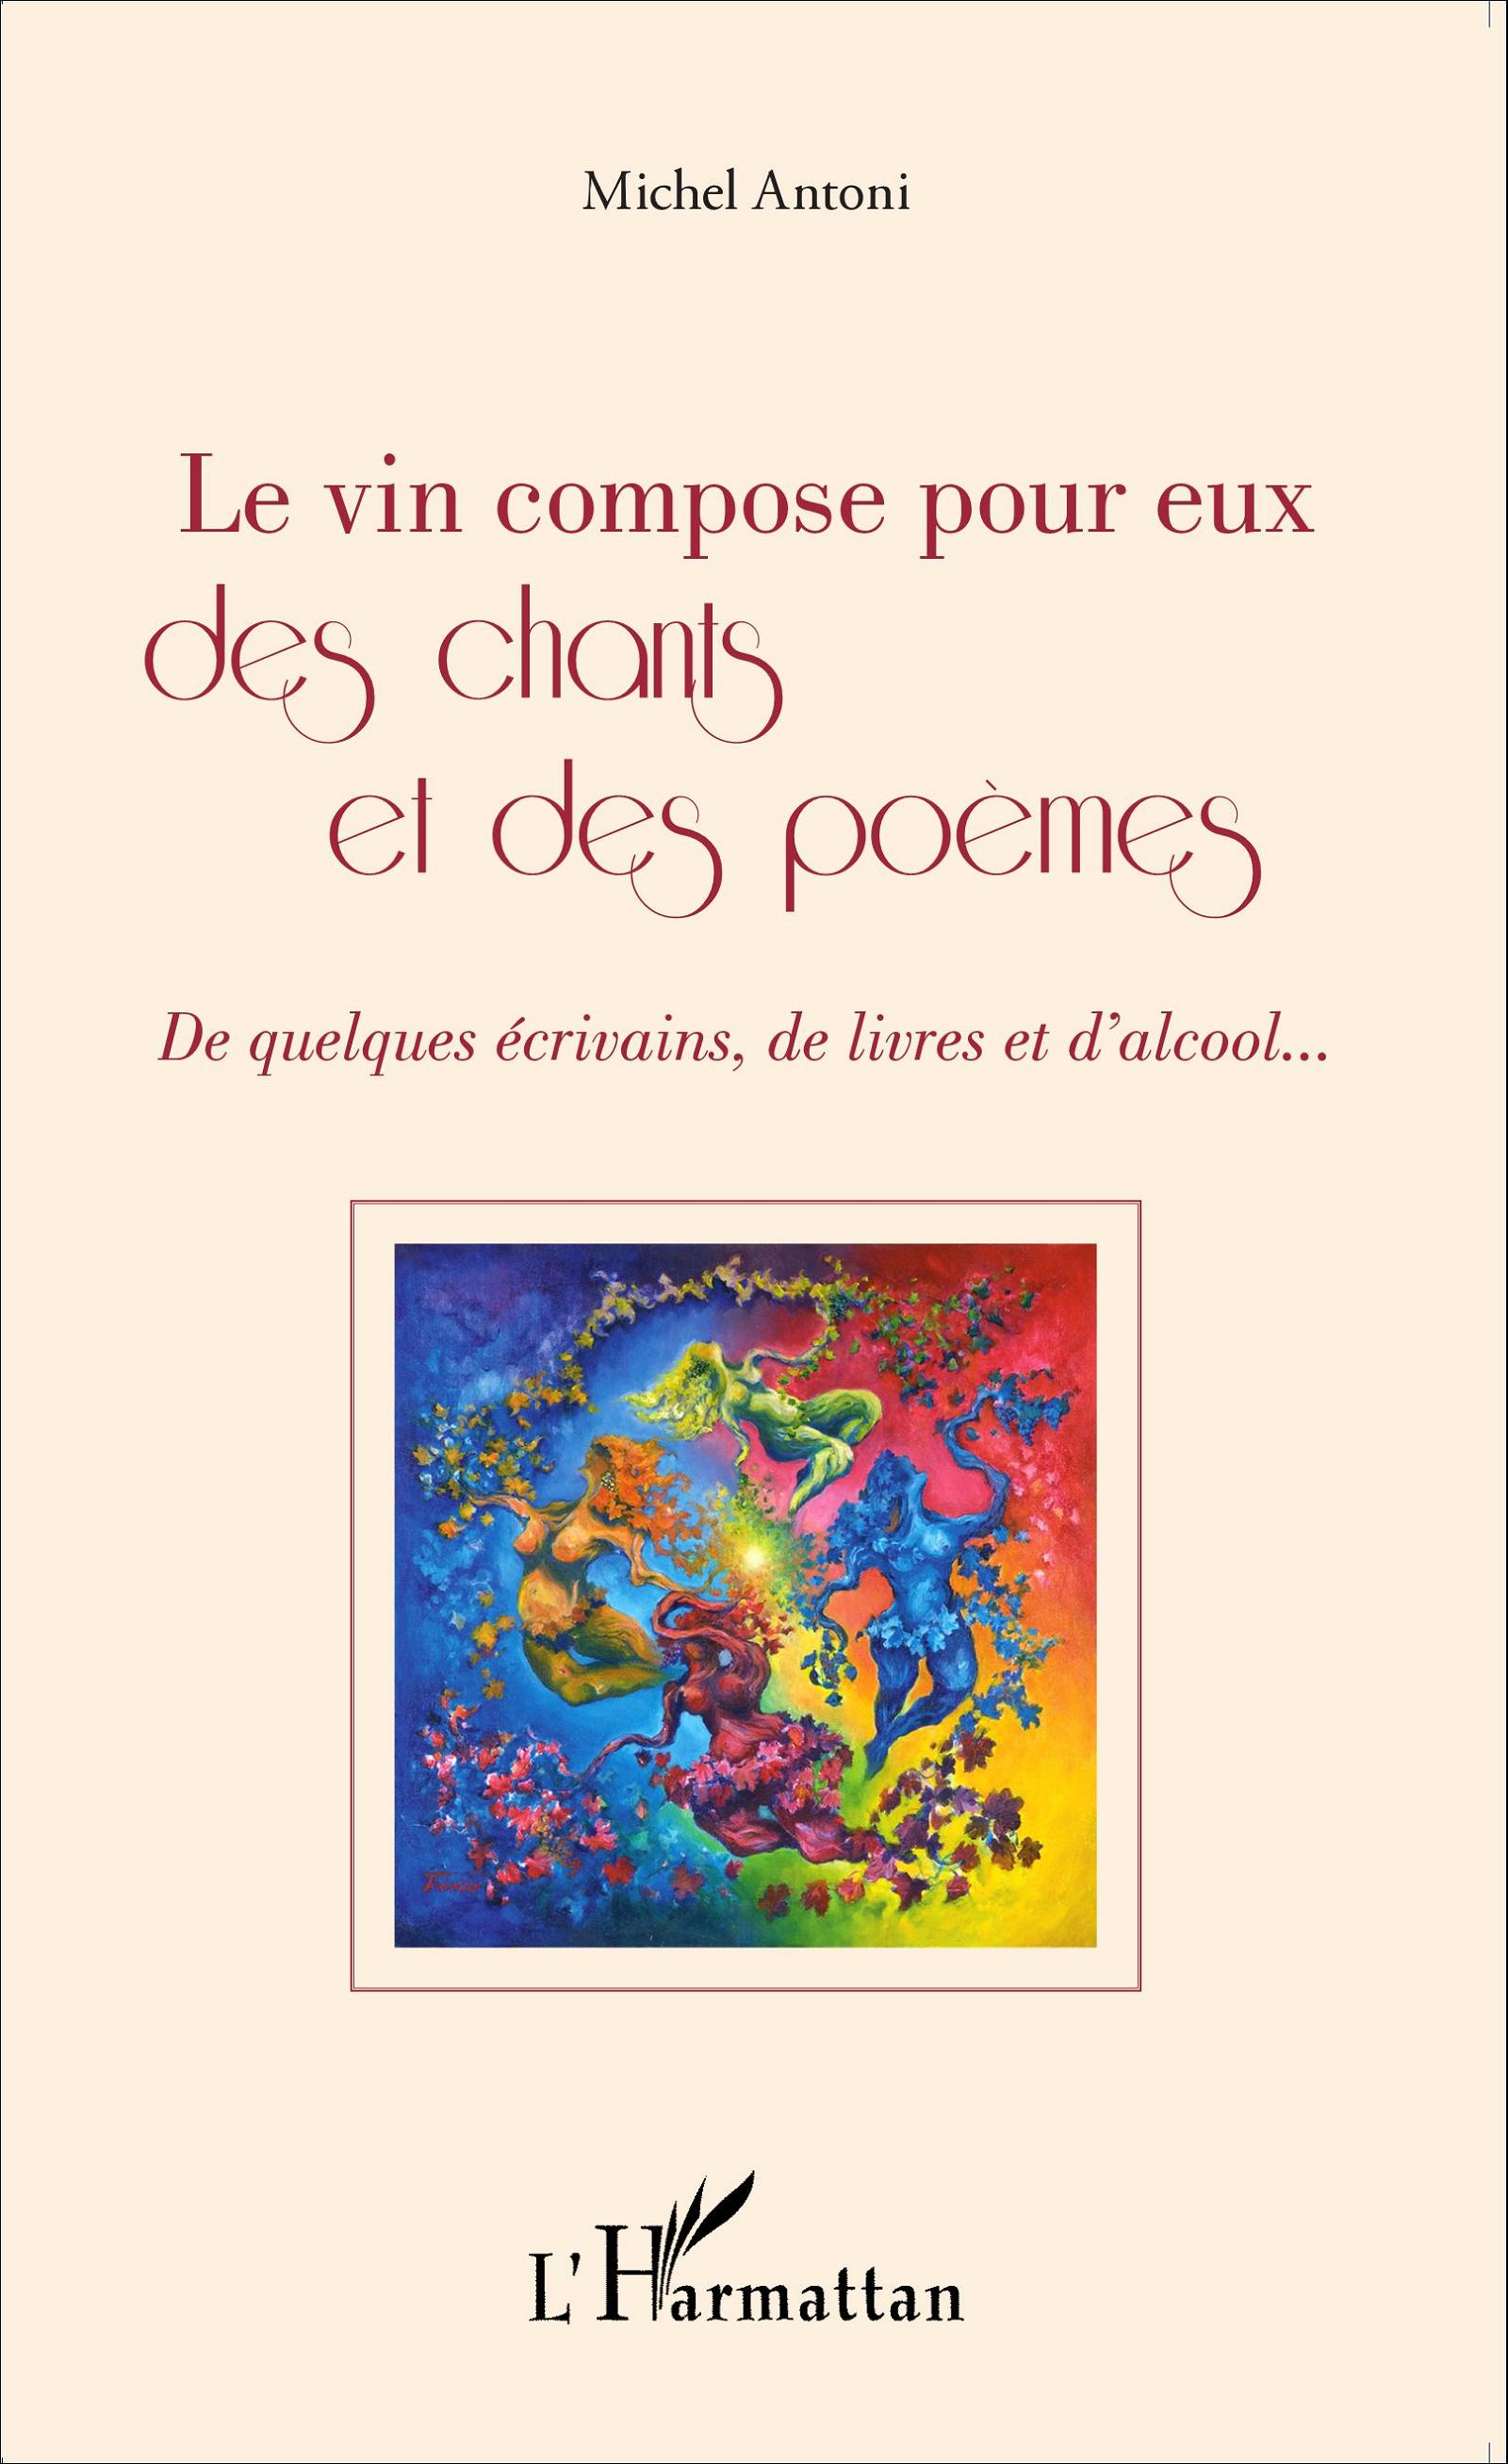 M. Antoni, Le Vin composé pour eux des chants et des poèmes